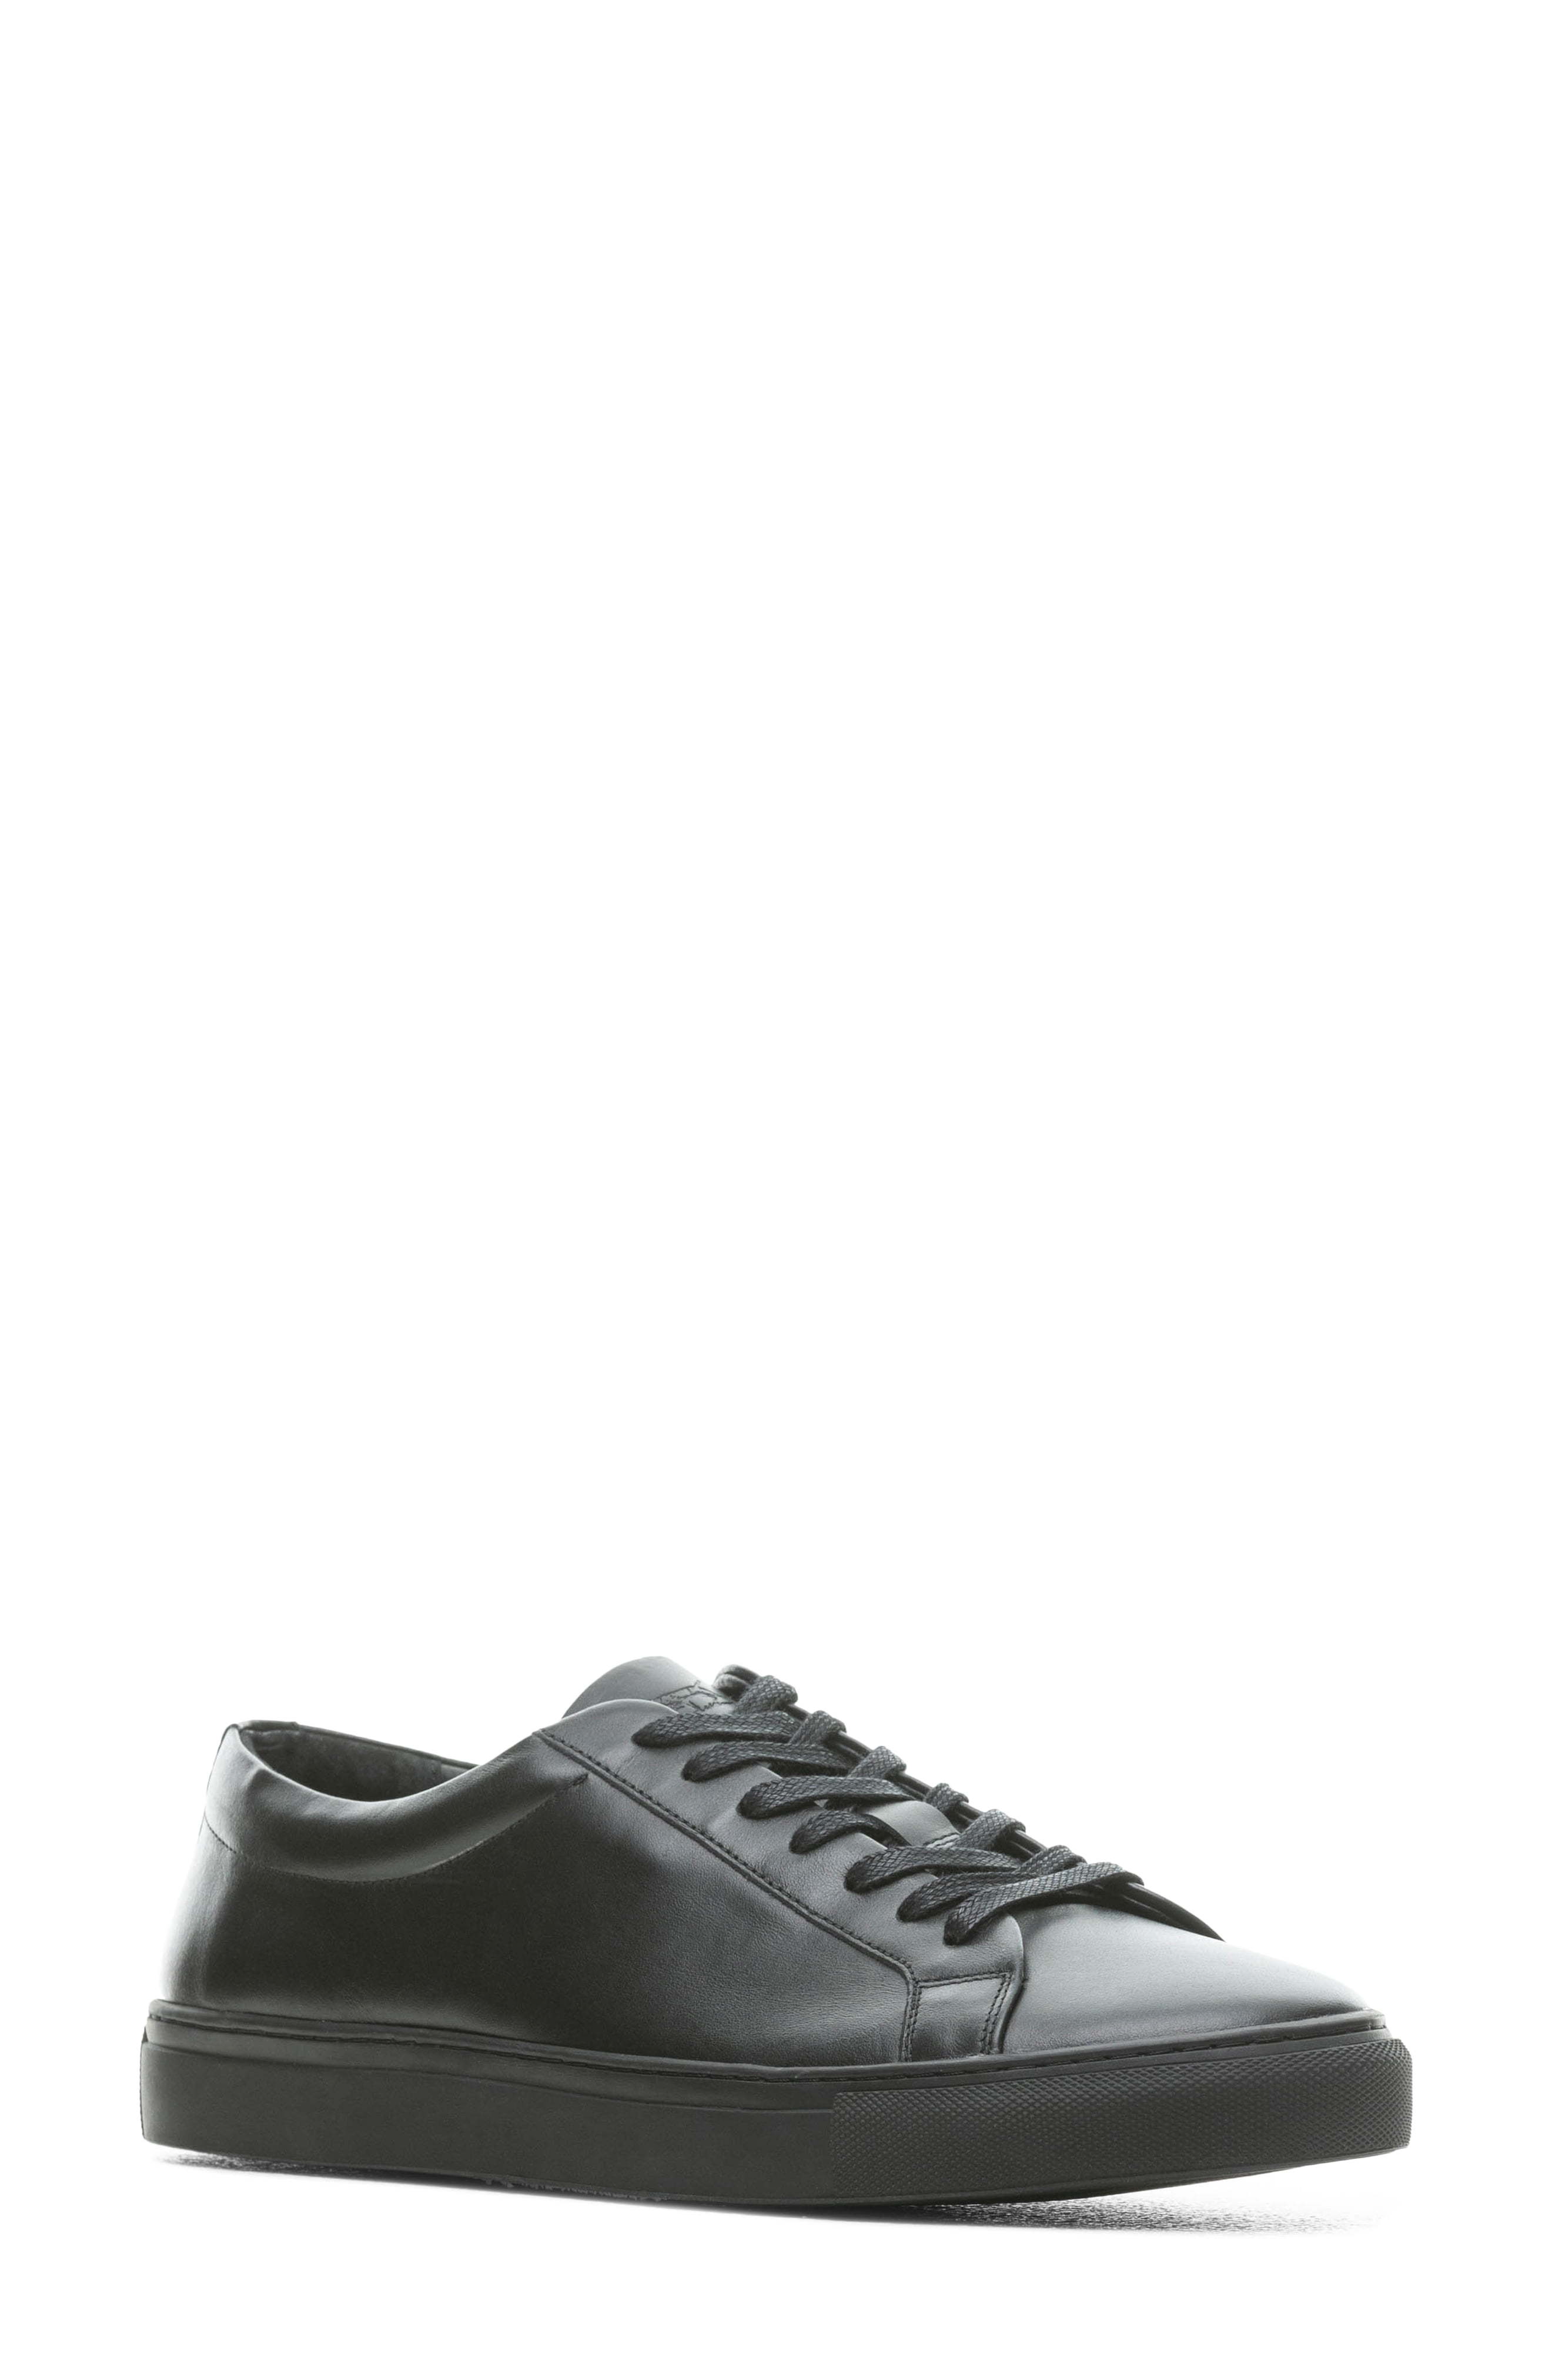 Rodd & Gunn Endeavour Street Sneaker, $148 | Nordstrom | Lookastic